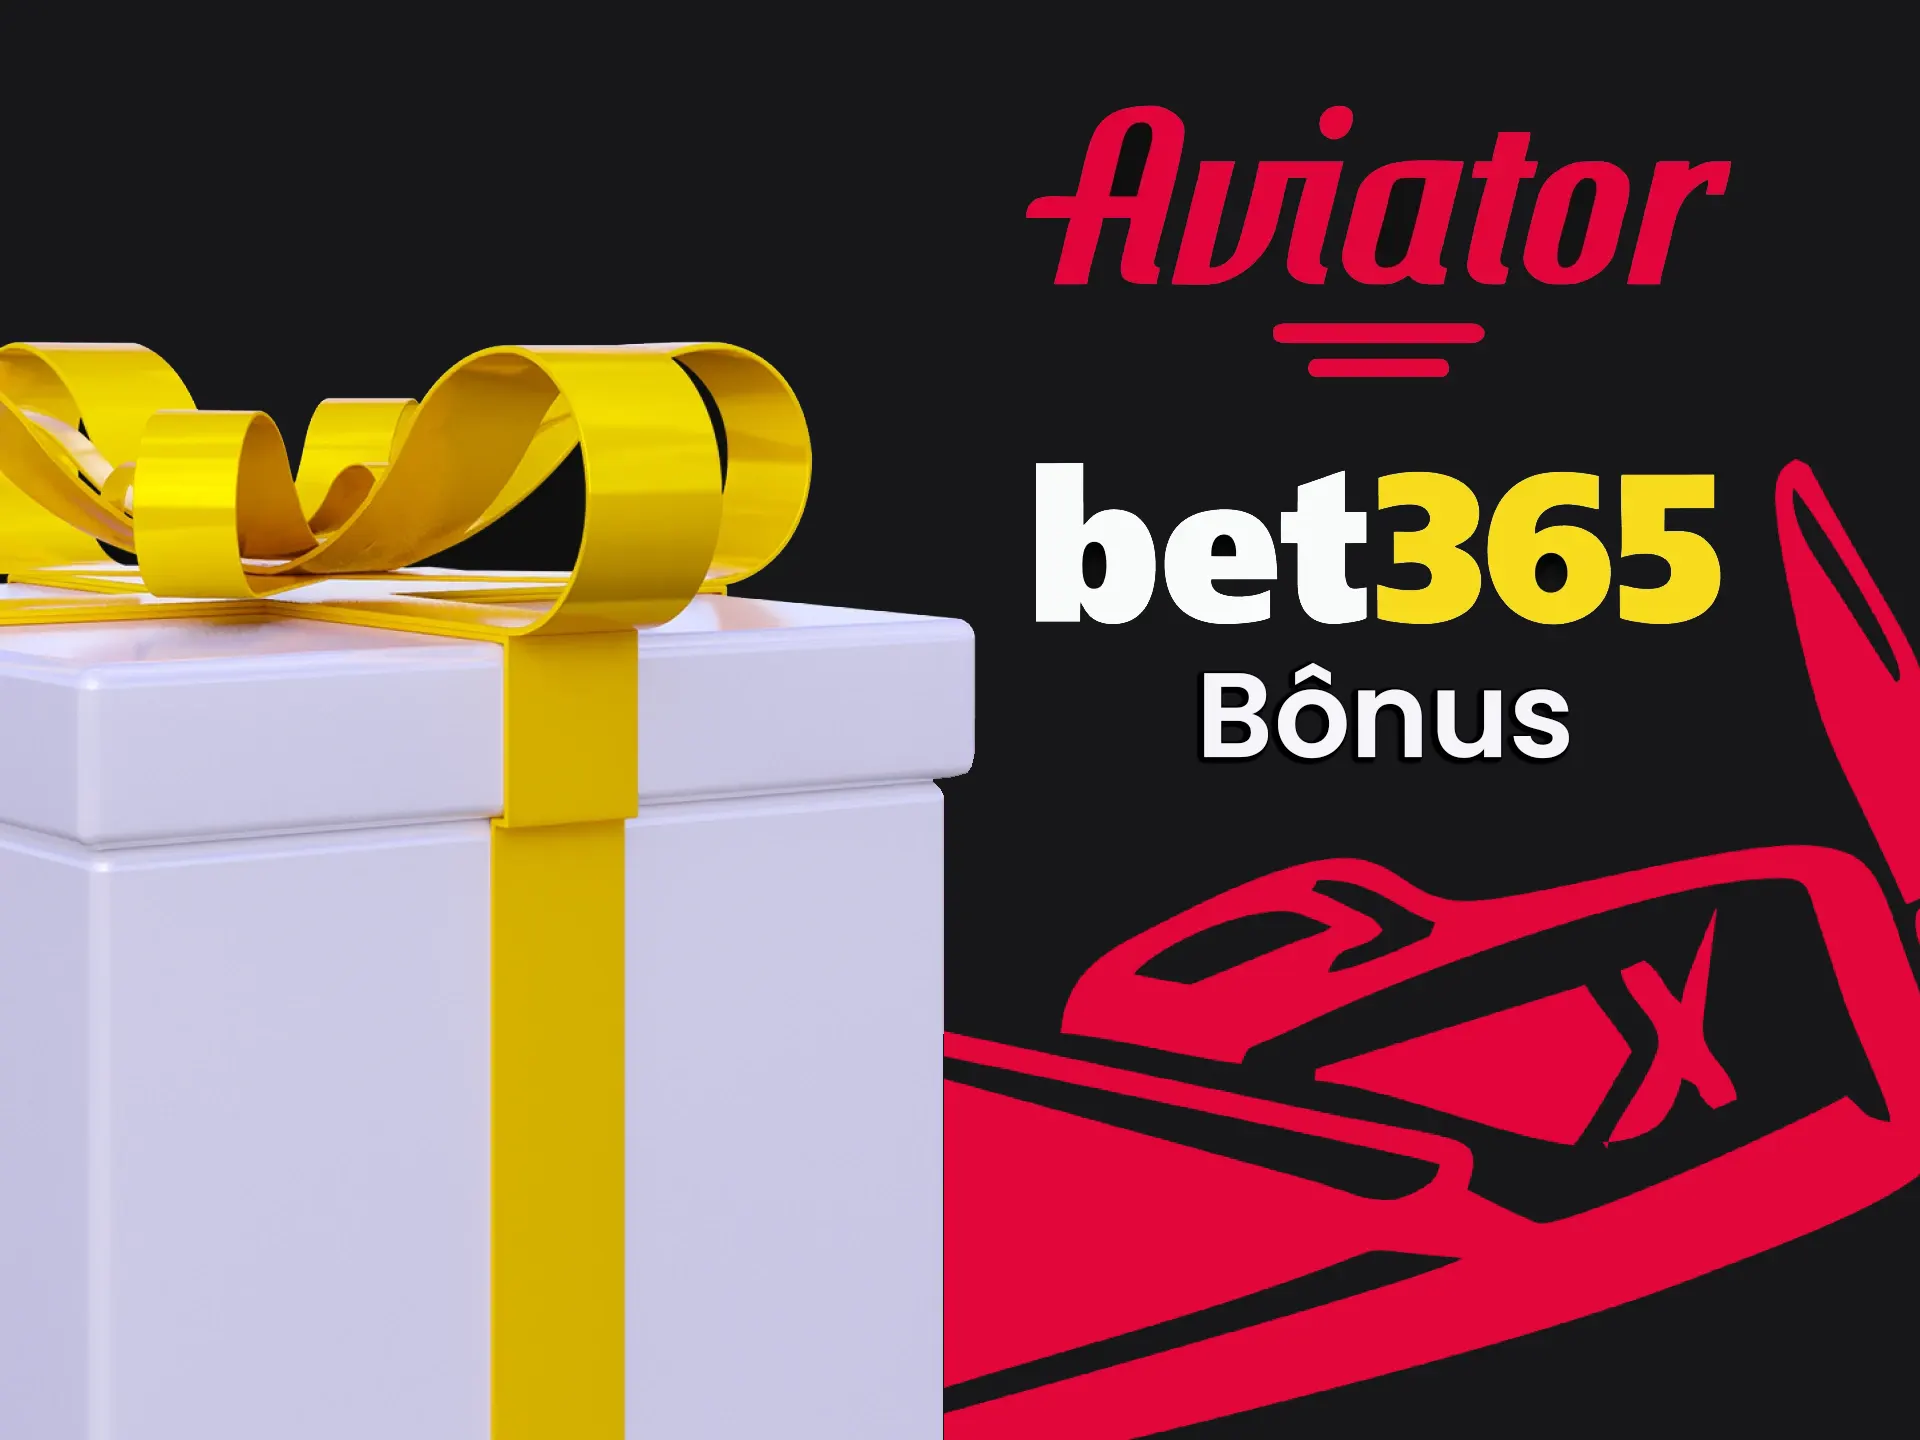 Ganhe bônus ao jogar Aviator no aplicativo da Bet365.